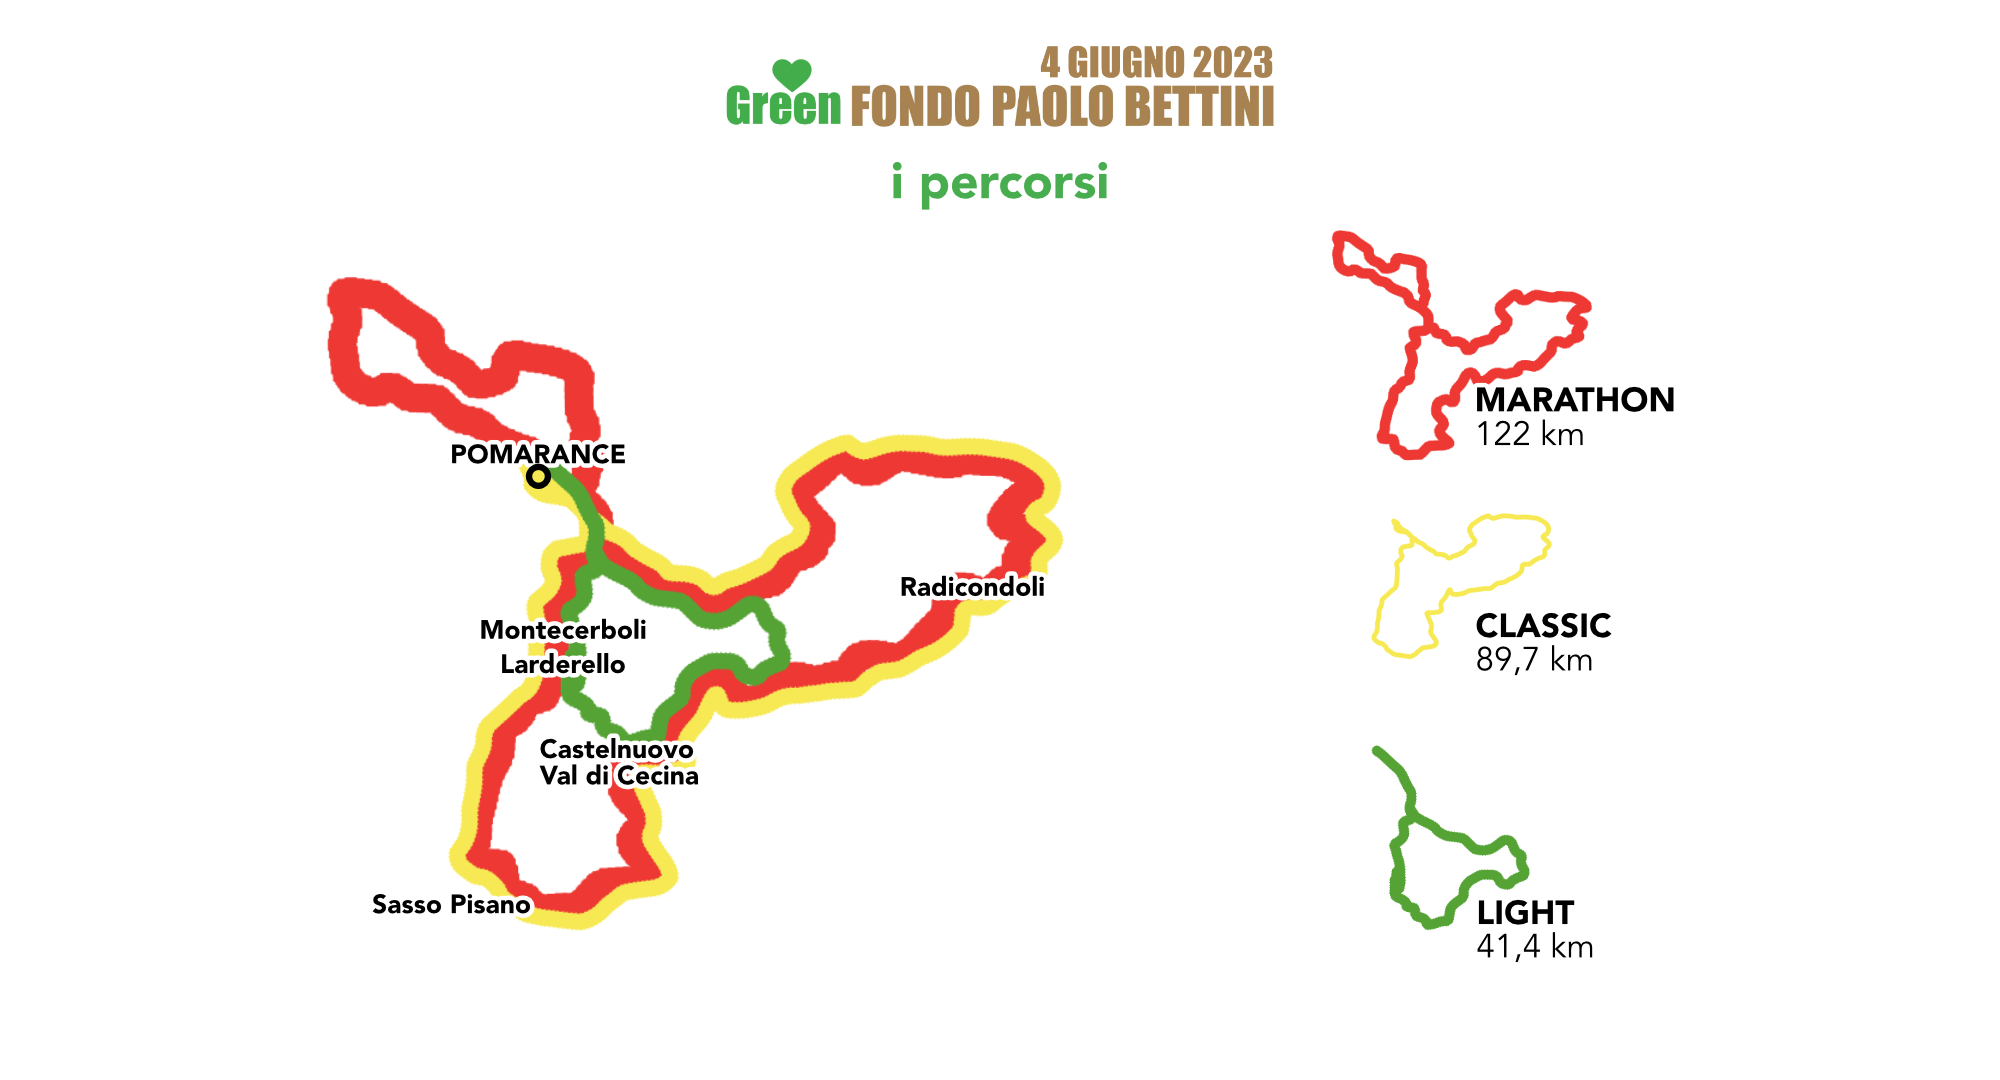 Light, Classic o Marathon: tutte le emozioni dei percorsi della Green Fondo Paolo Bettini 2023.